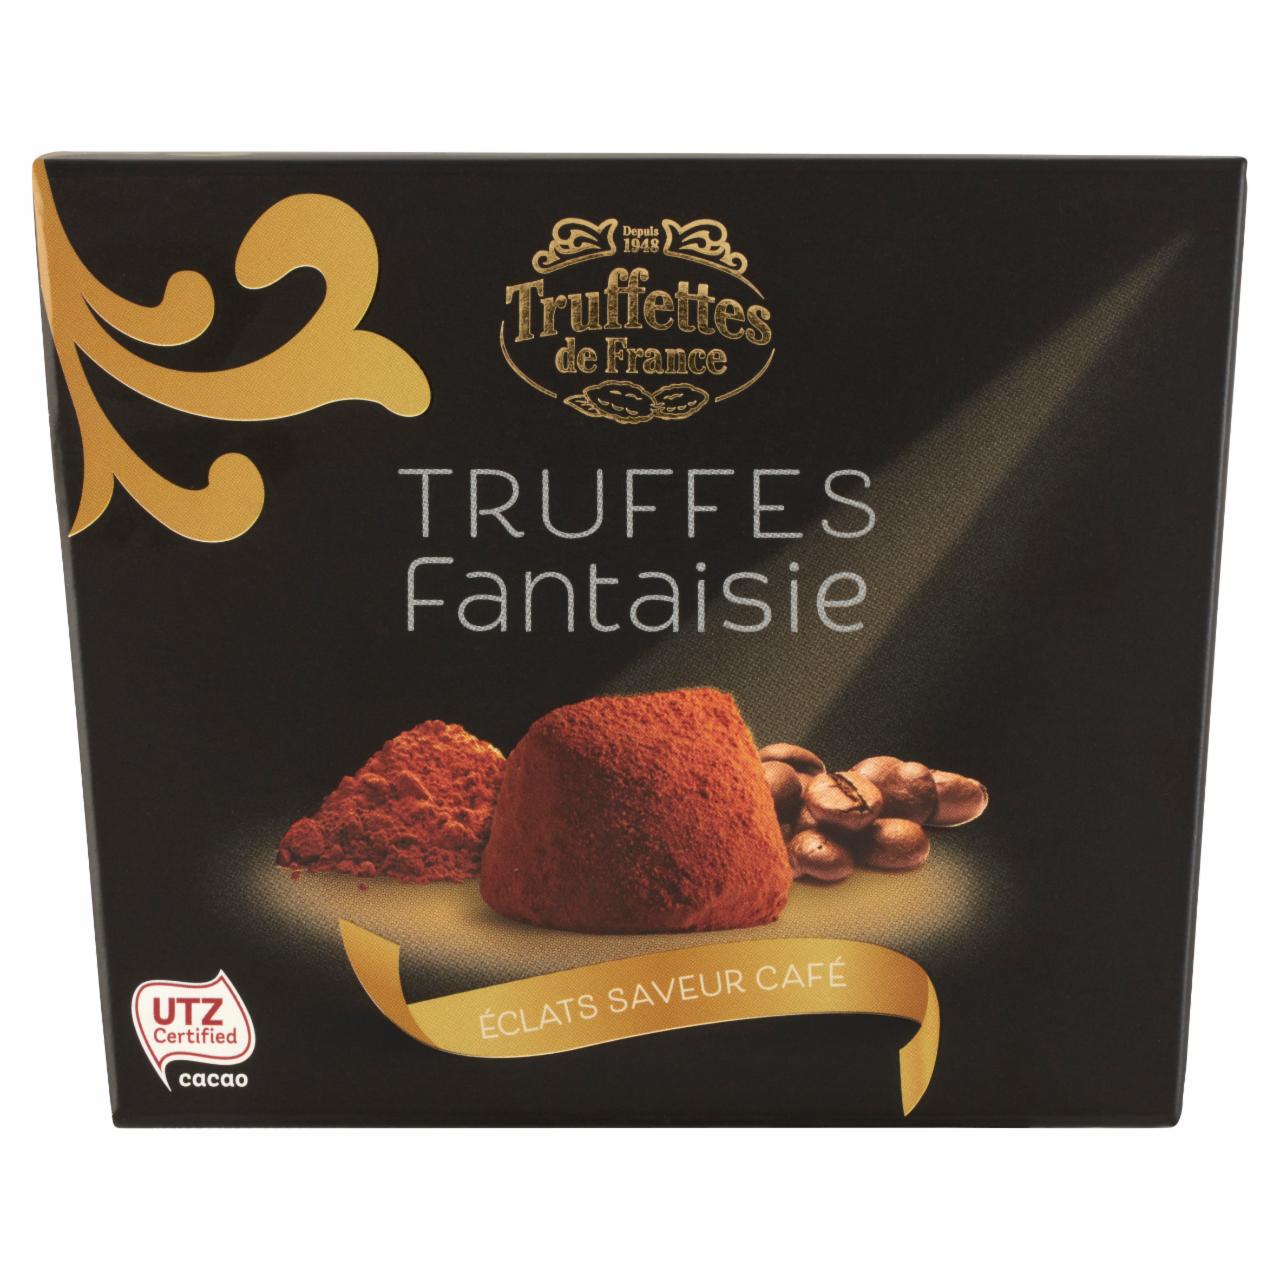 Képek - Truffettes de France kakaóporral borított trüffel kávé ízesítésű kakaóbab törettel 200 g